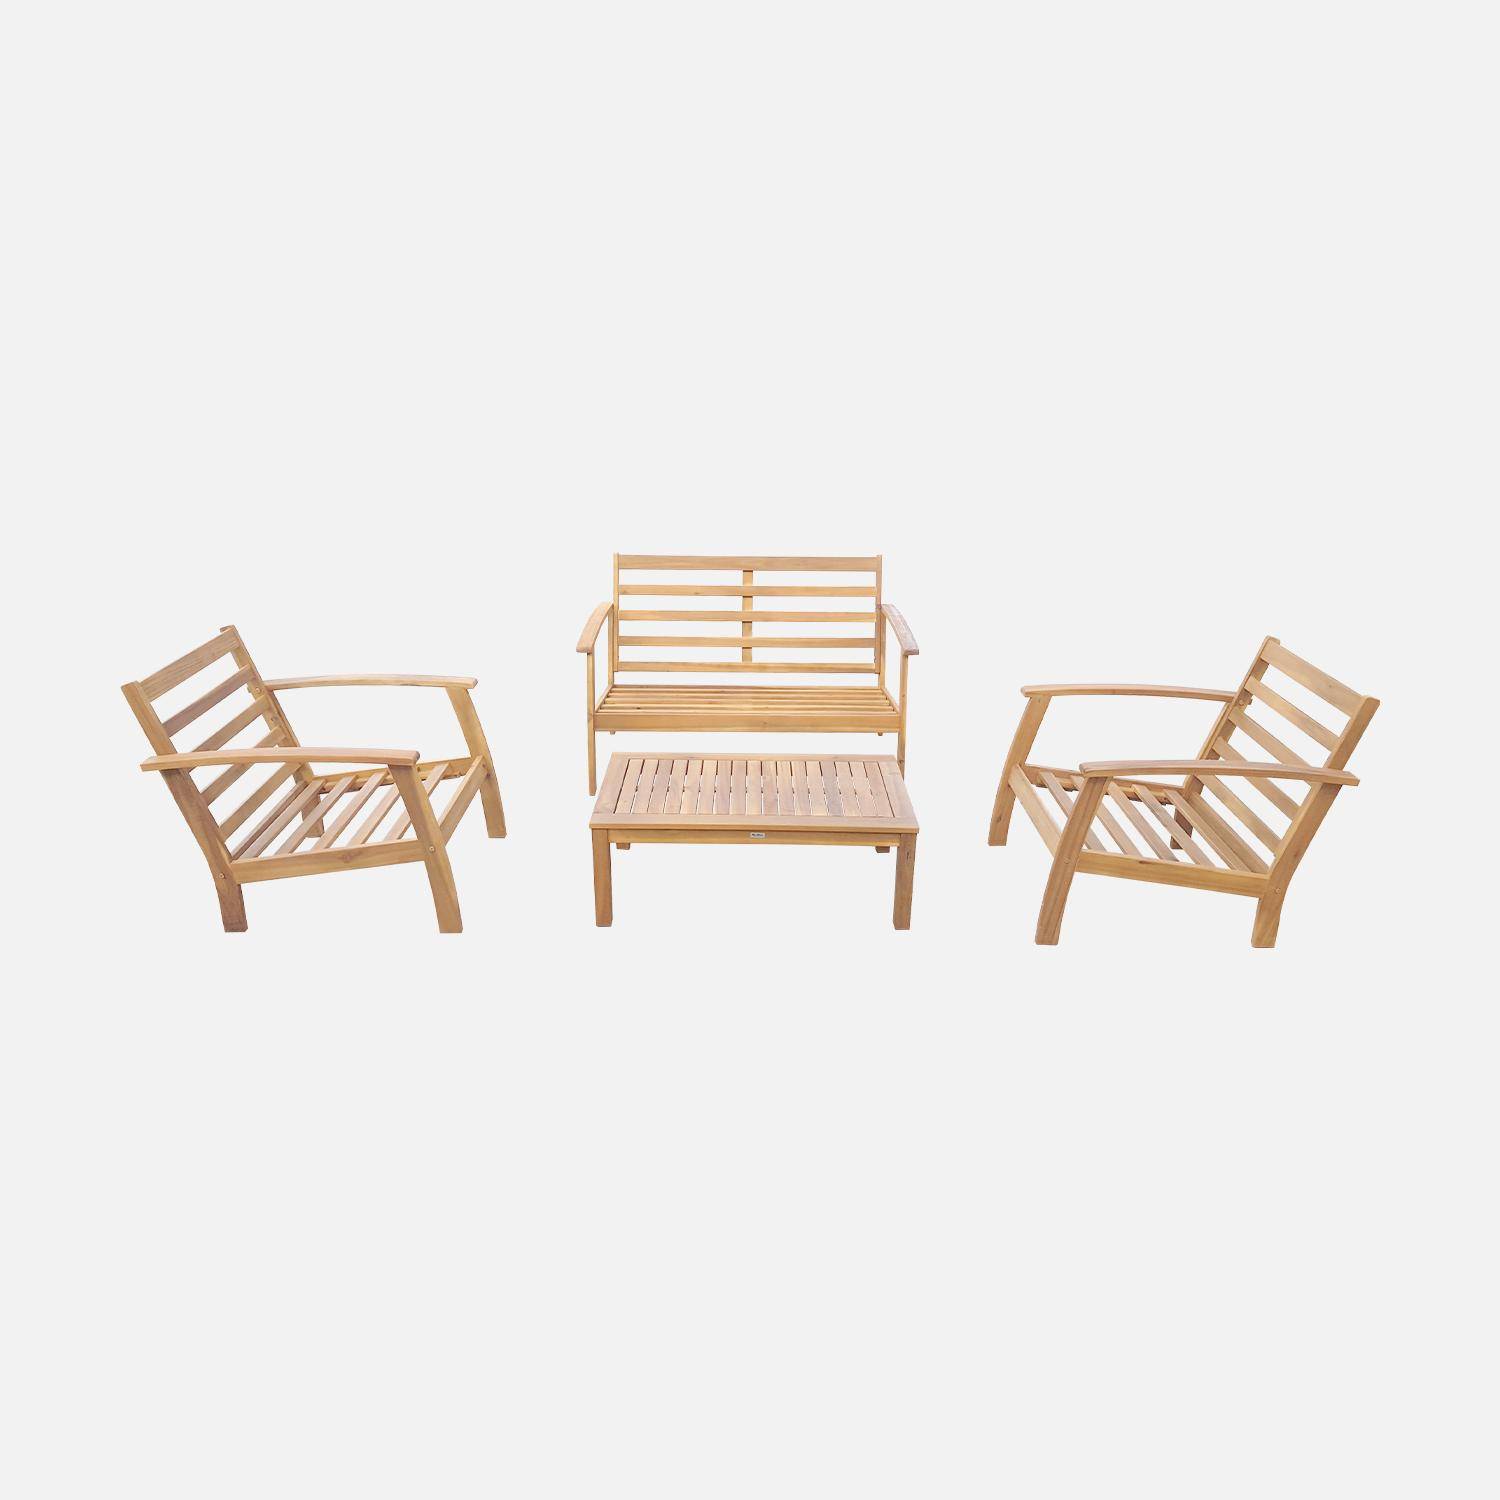 Salon de jardin en bois 4 places - Ushuaïa - Coussins bleu canard, canapé, fauteuils et table basse en acacia, design Photo4